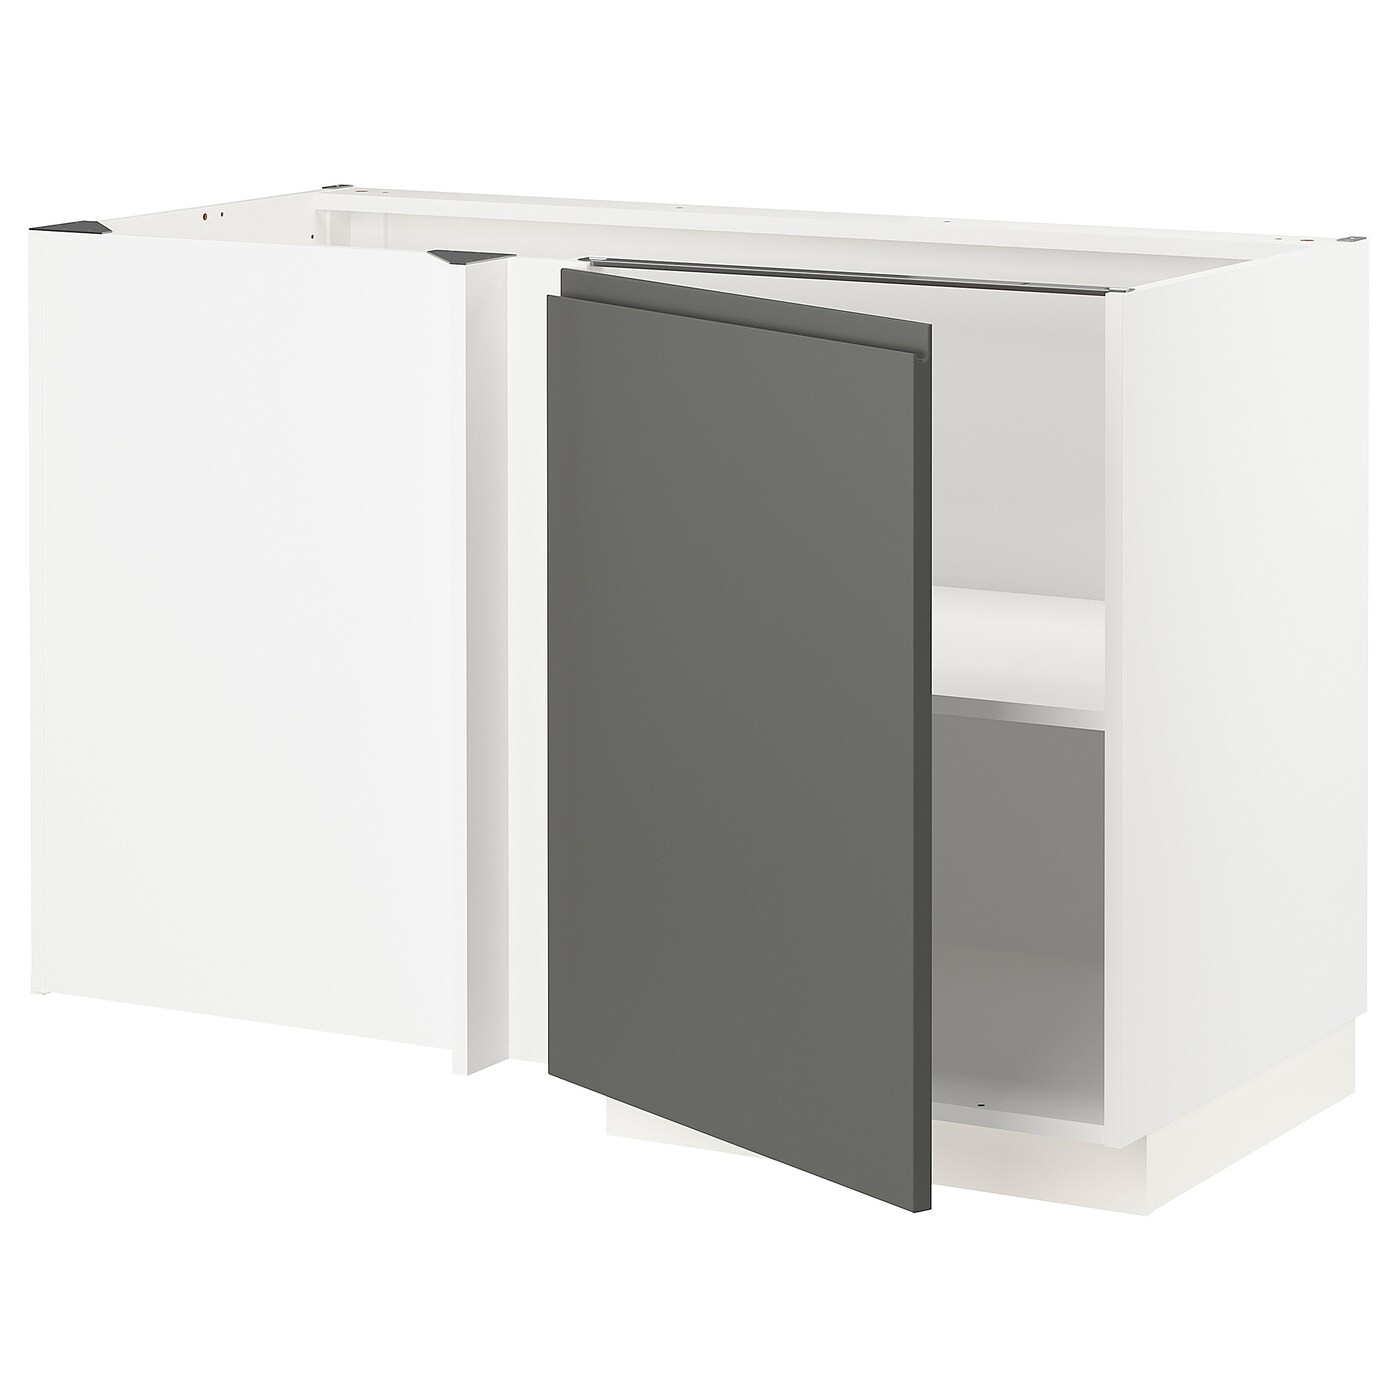 Напольный шкаф  - IKEA METOD, 88x67,5x127,5см, белый/темно-серый, МЕТОД ИКЕА